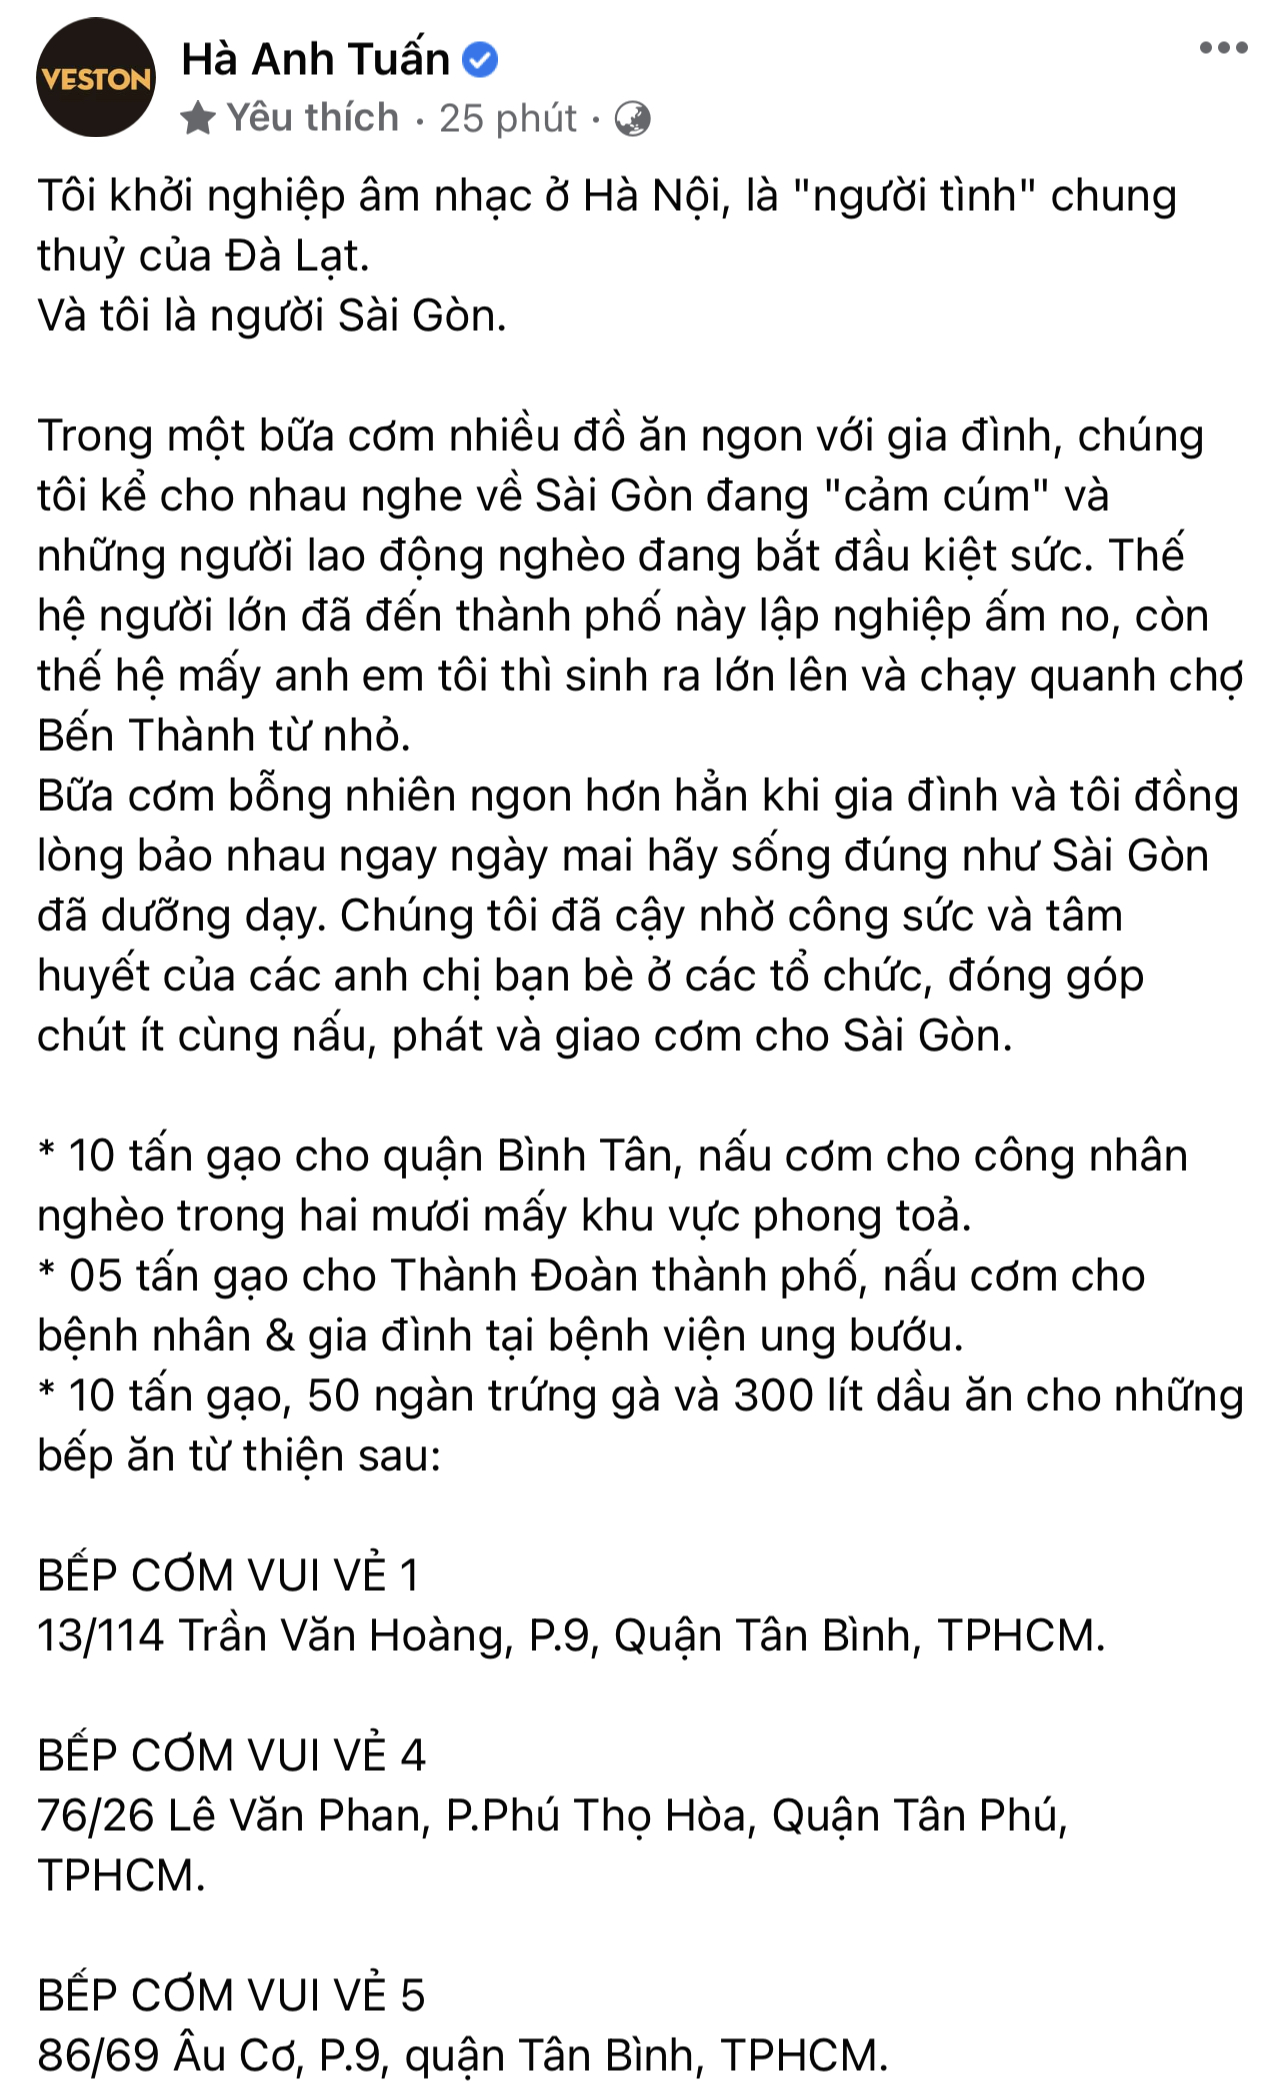 Hà Anh Tuấn lại ghi điểm khi quyên góp 25 tấn gạo để 'cả Sài Gòn sẽ cùng nhau nấu cơm' - Ảnh 3